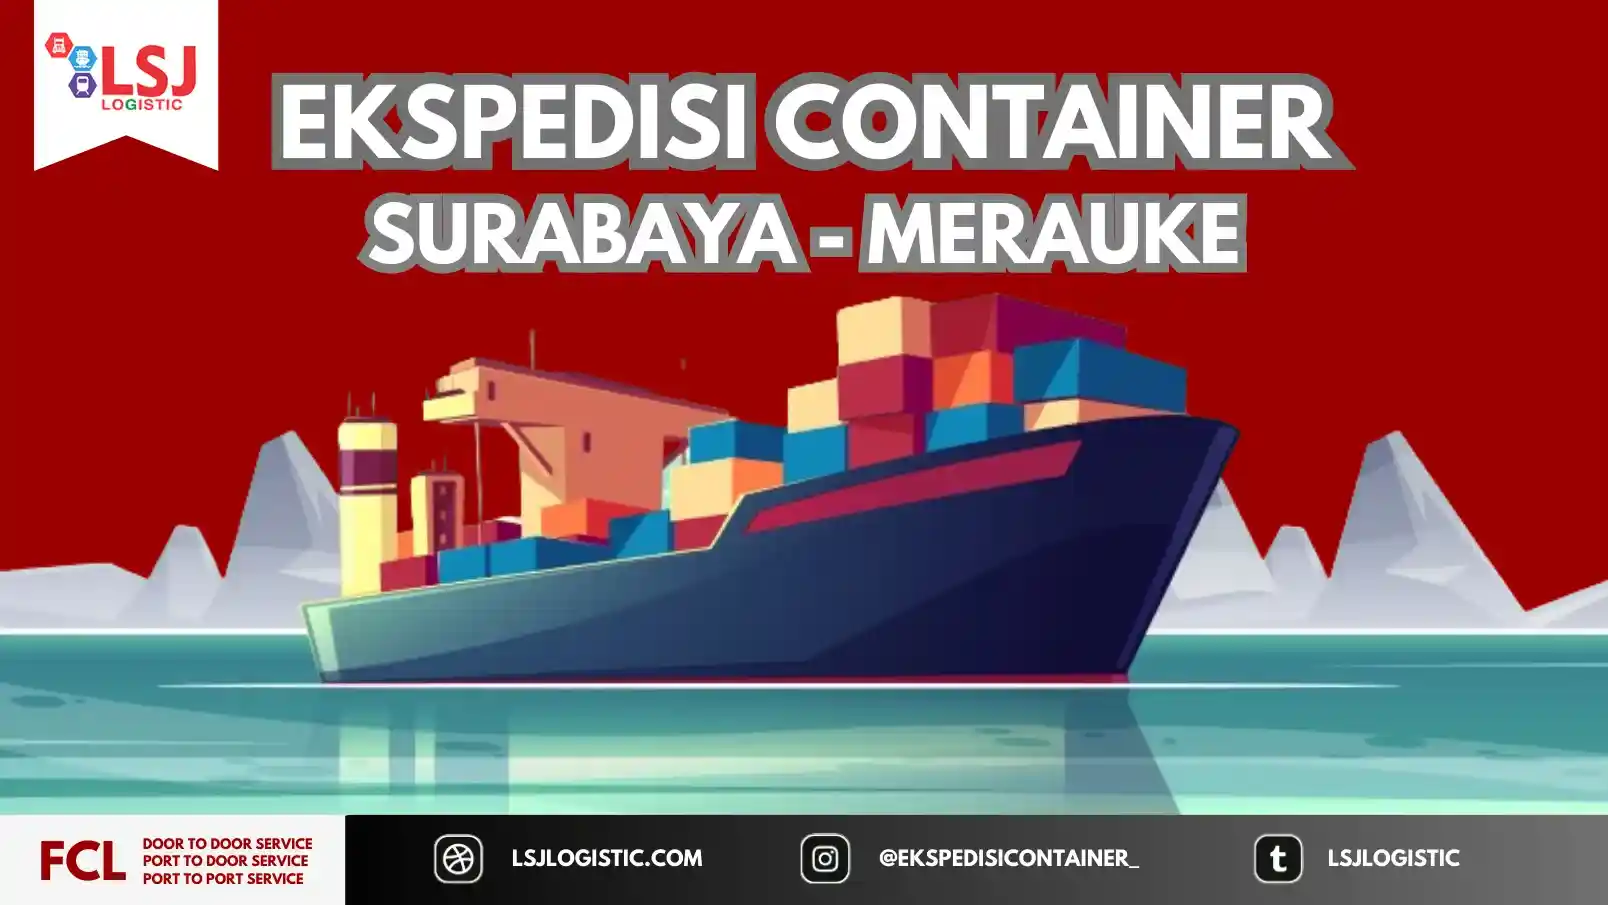 Ongkos Kirim Container Surabaya Merauke